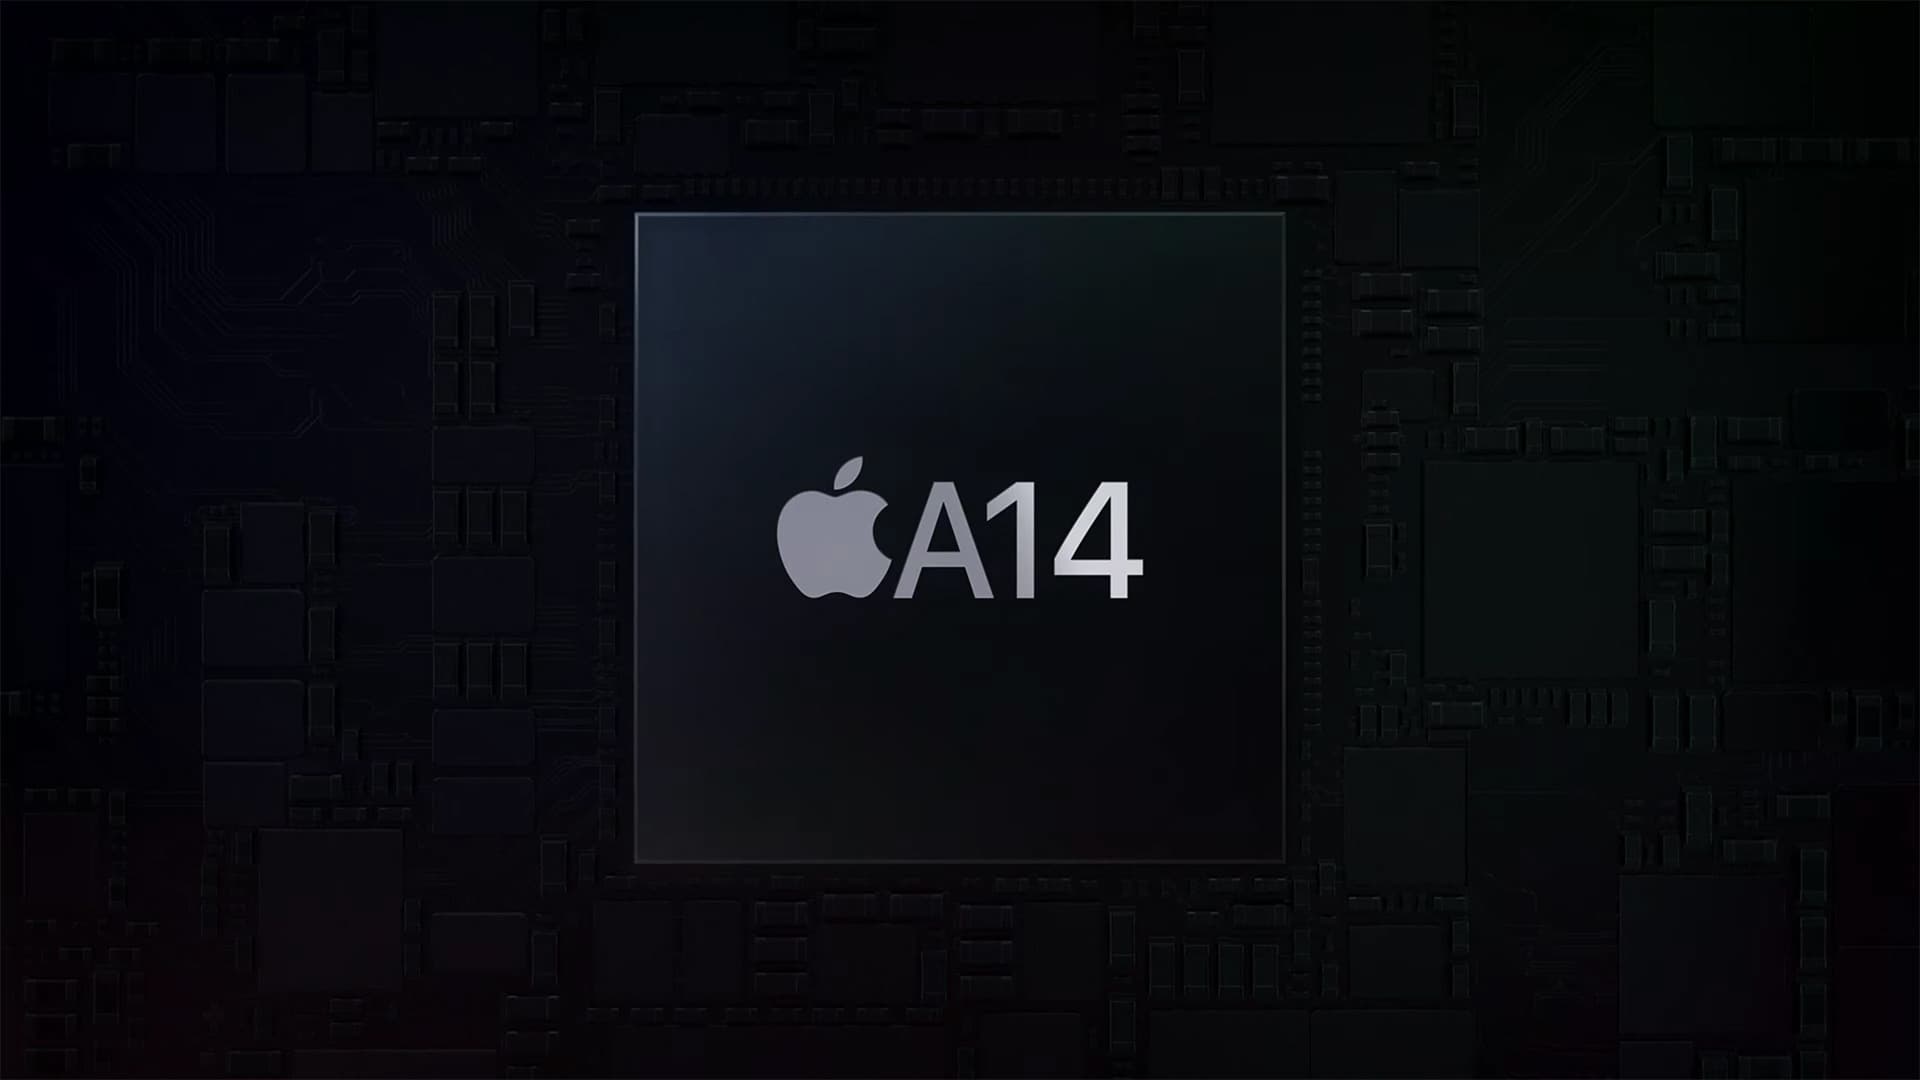 Apple's A14 Bionic processor